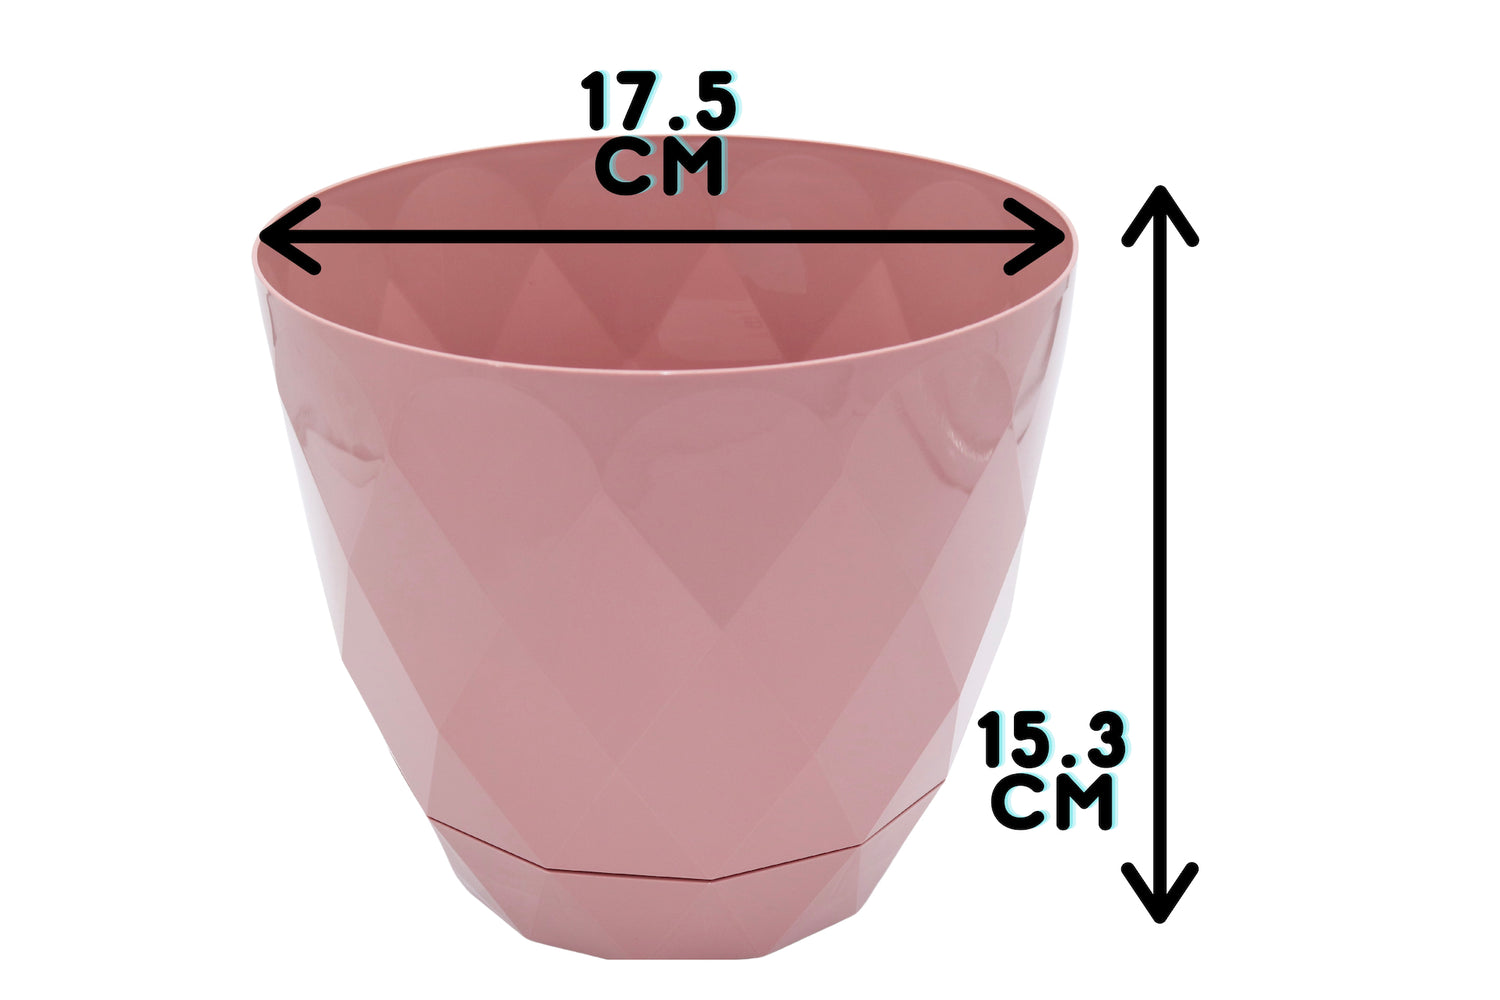 17.5cm pink plant pot measurements